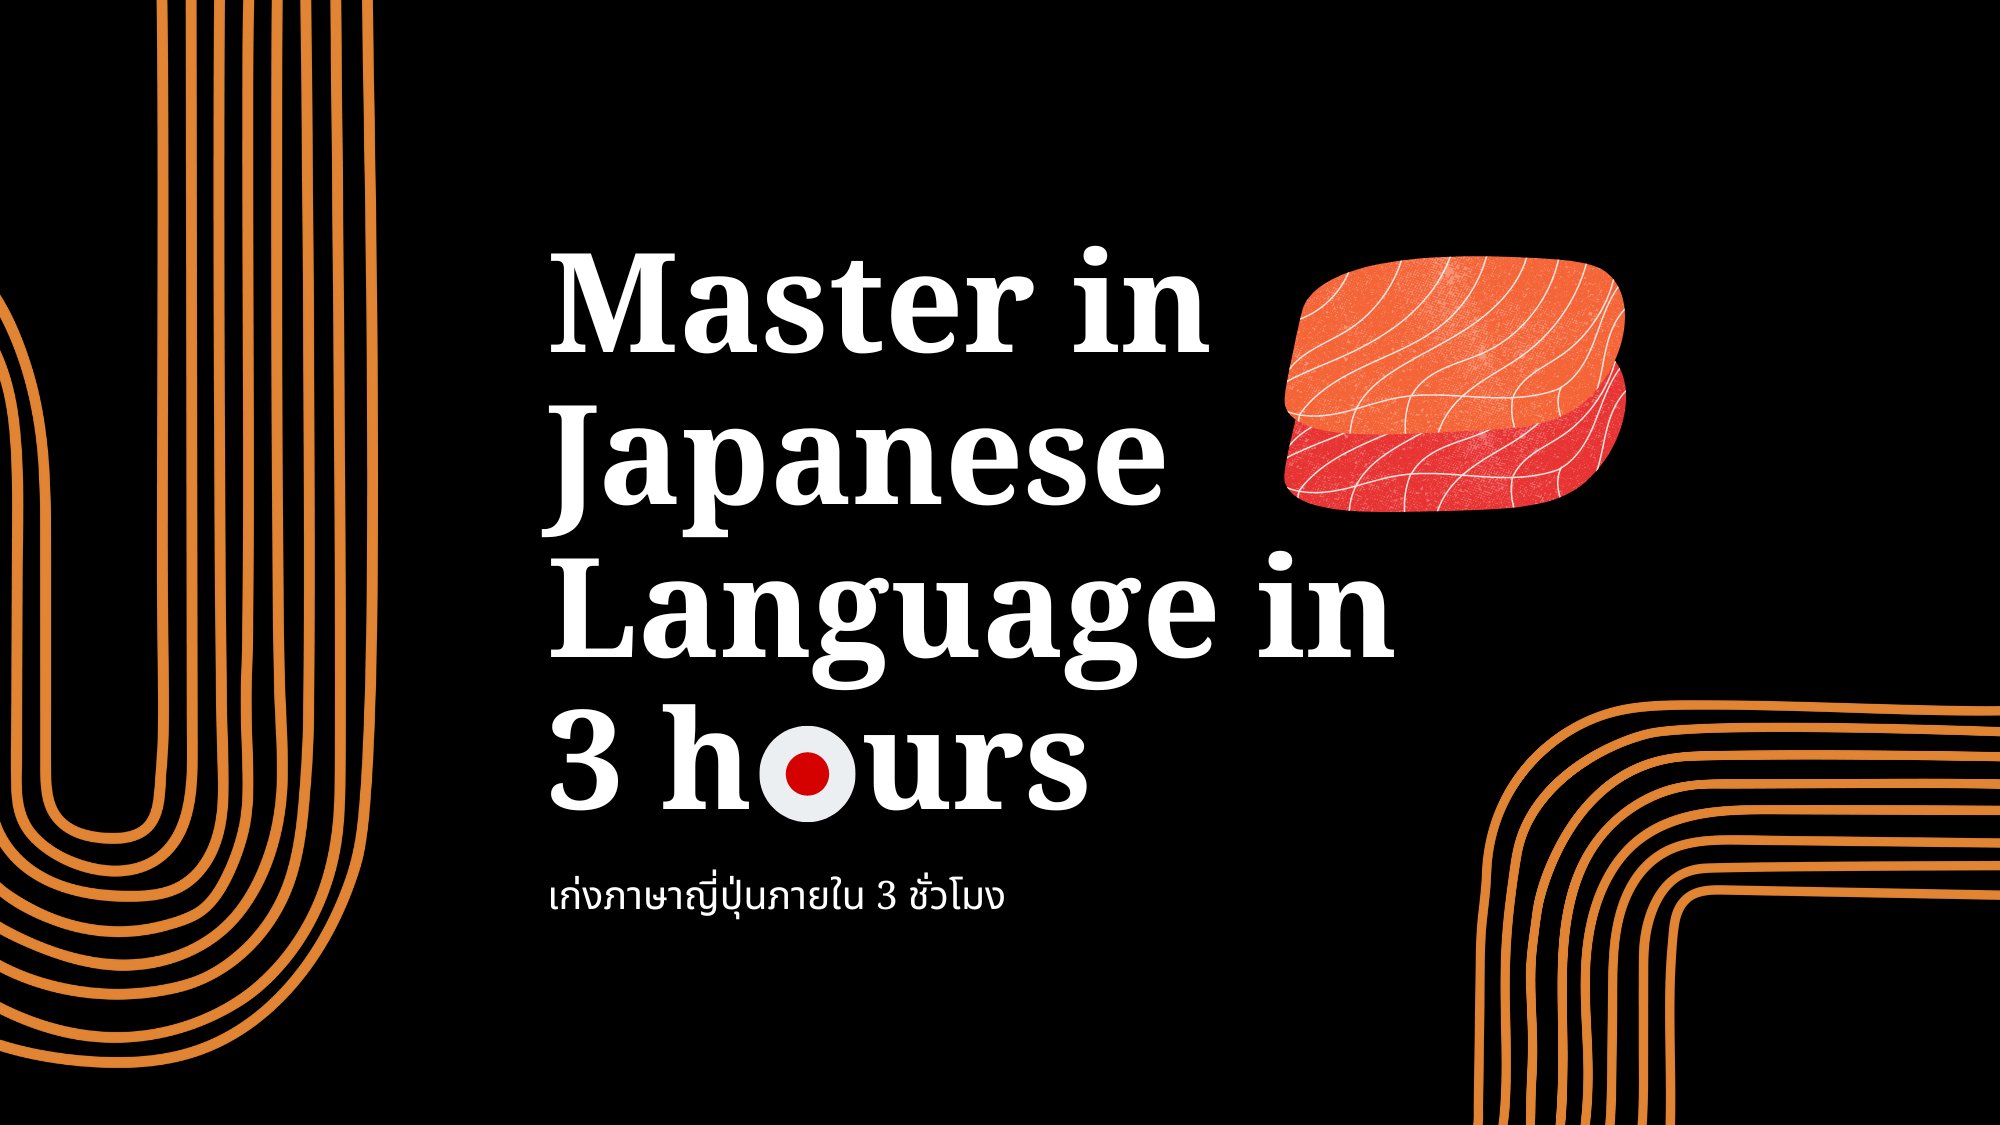 เก่งภาษาญีปุ่น ภายใน 3 ชม. (Master in Japanese Language in 3 hours) su333